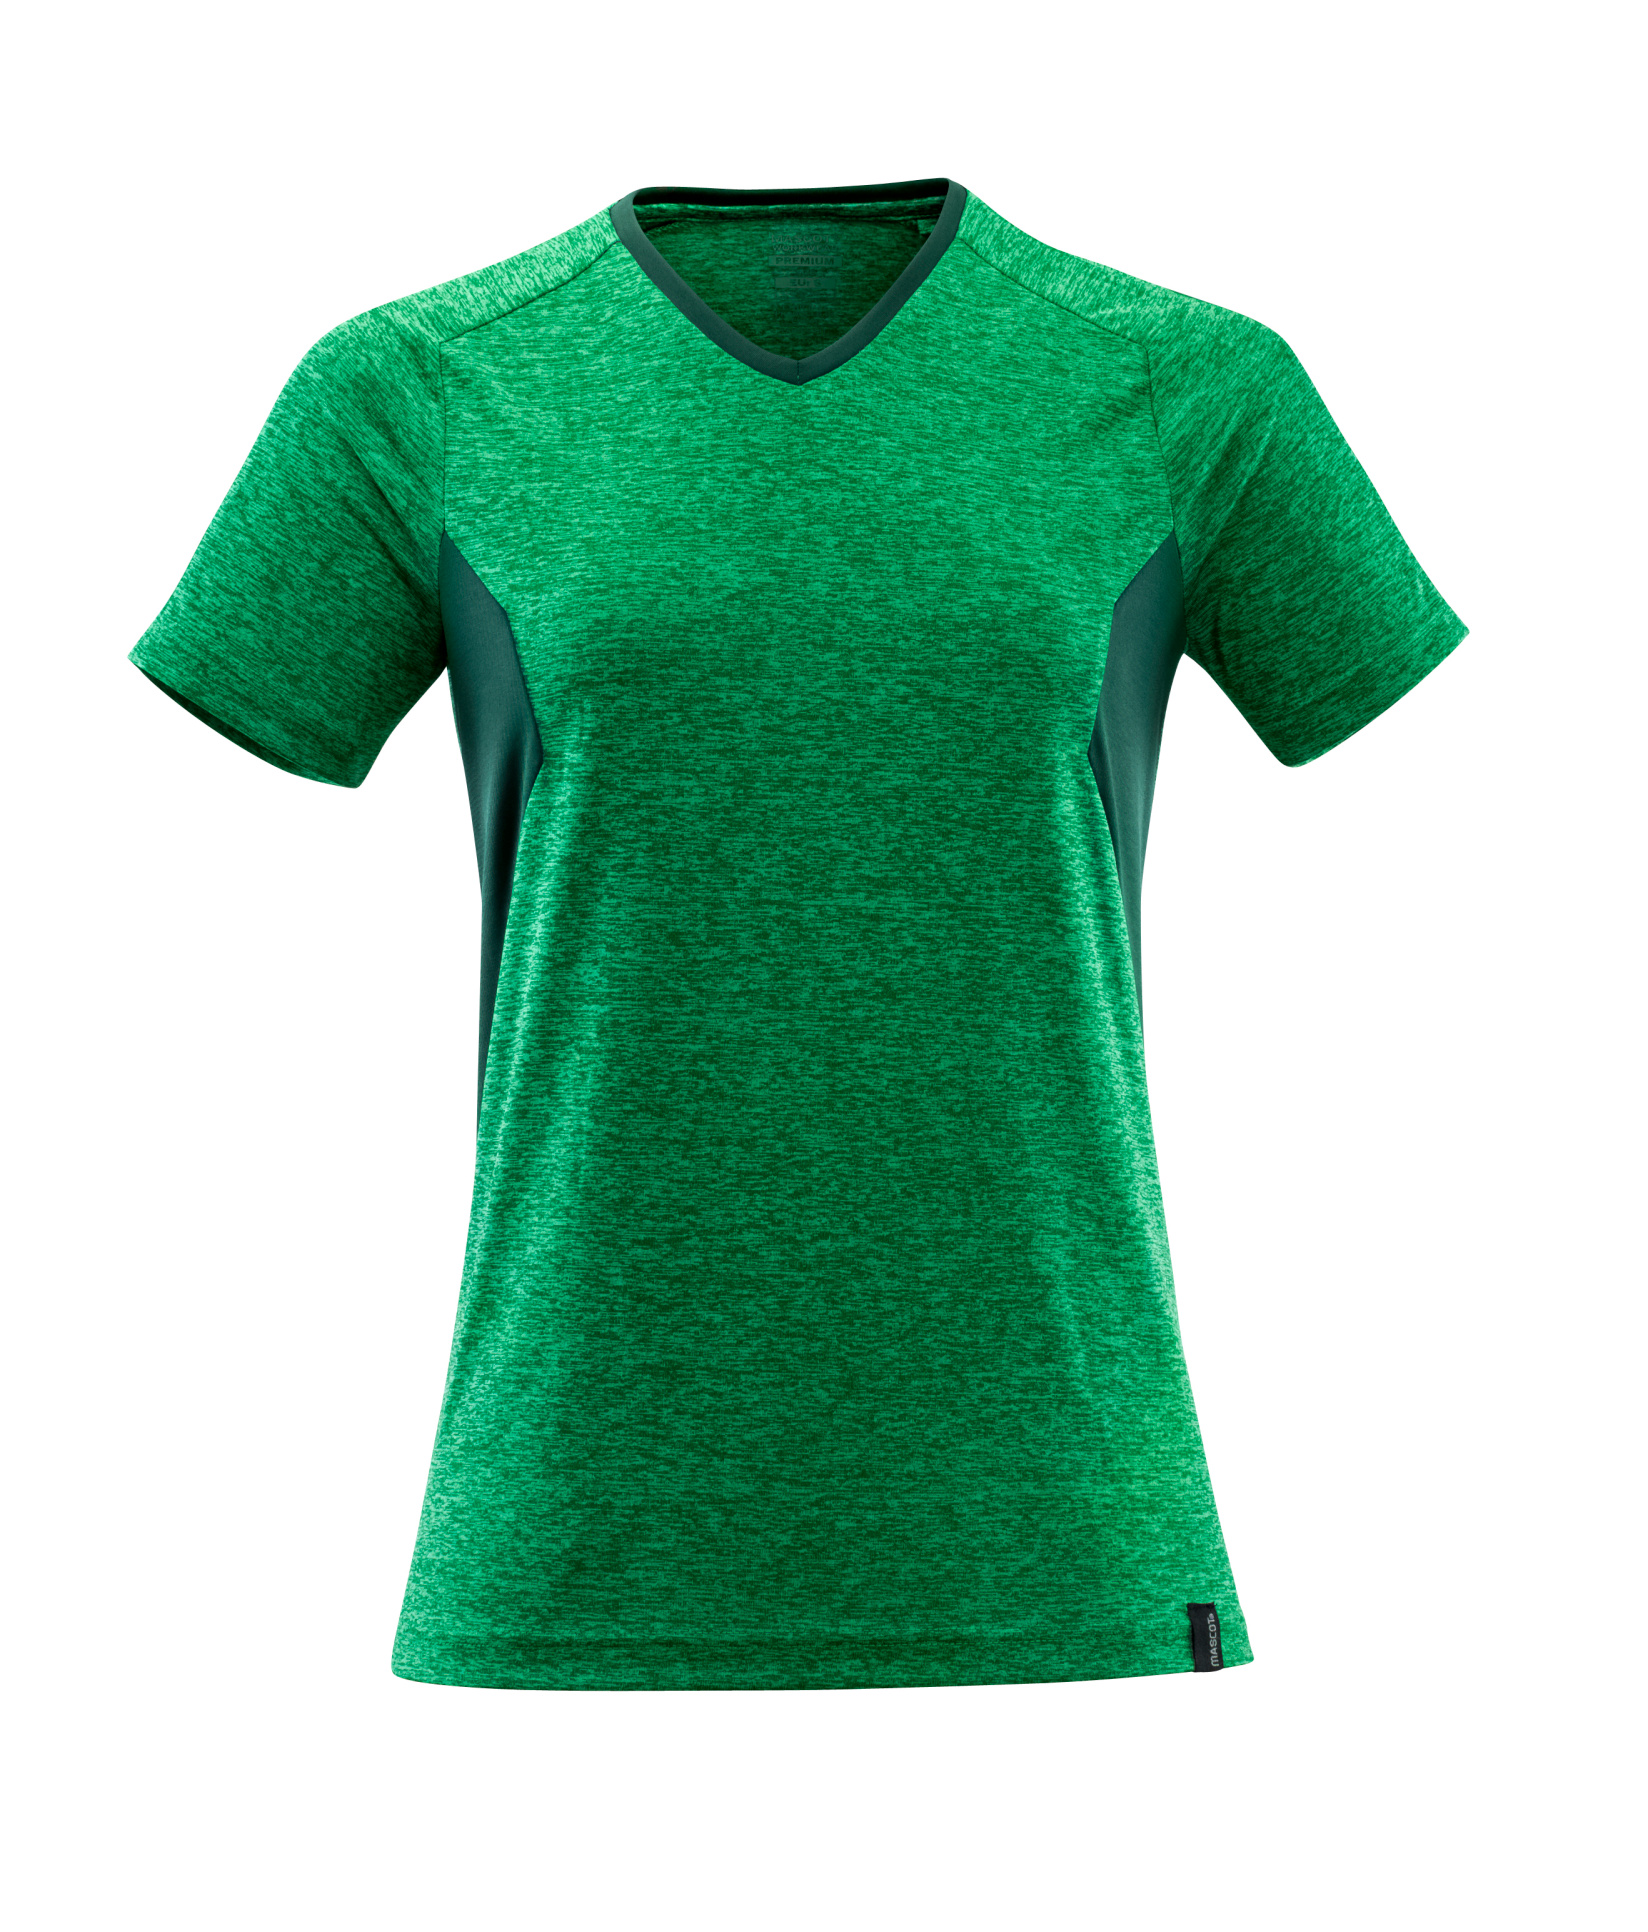 Damen T-Shirt kurzarm Mascot 18092-801 grasgruen/gruen 33303